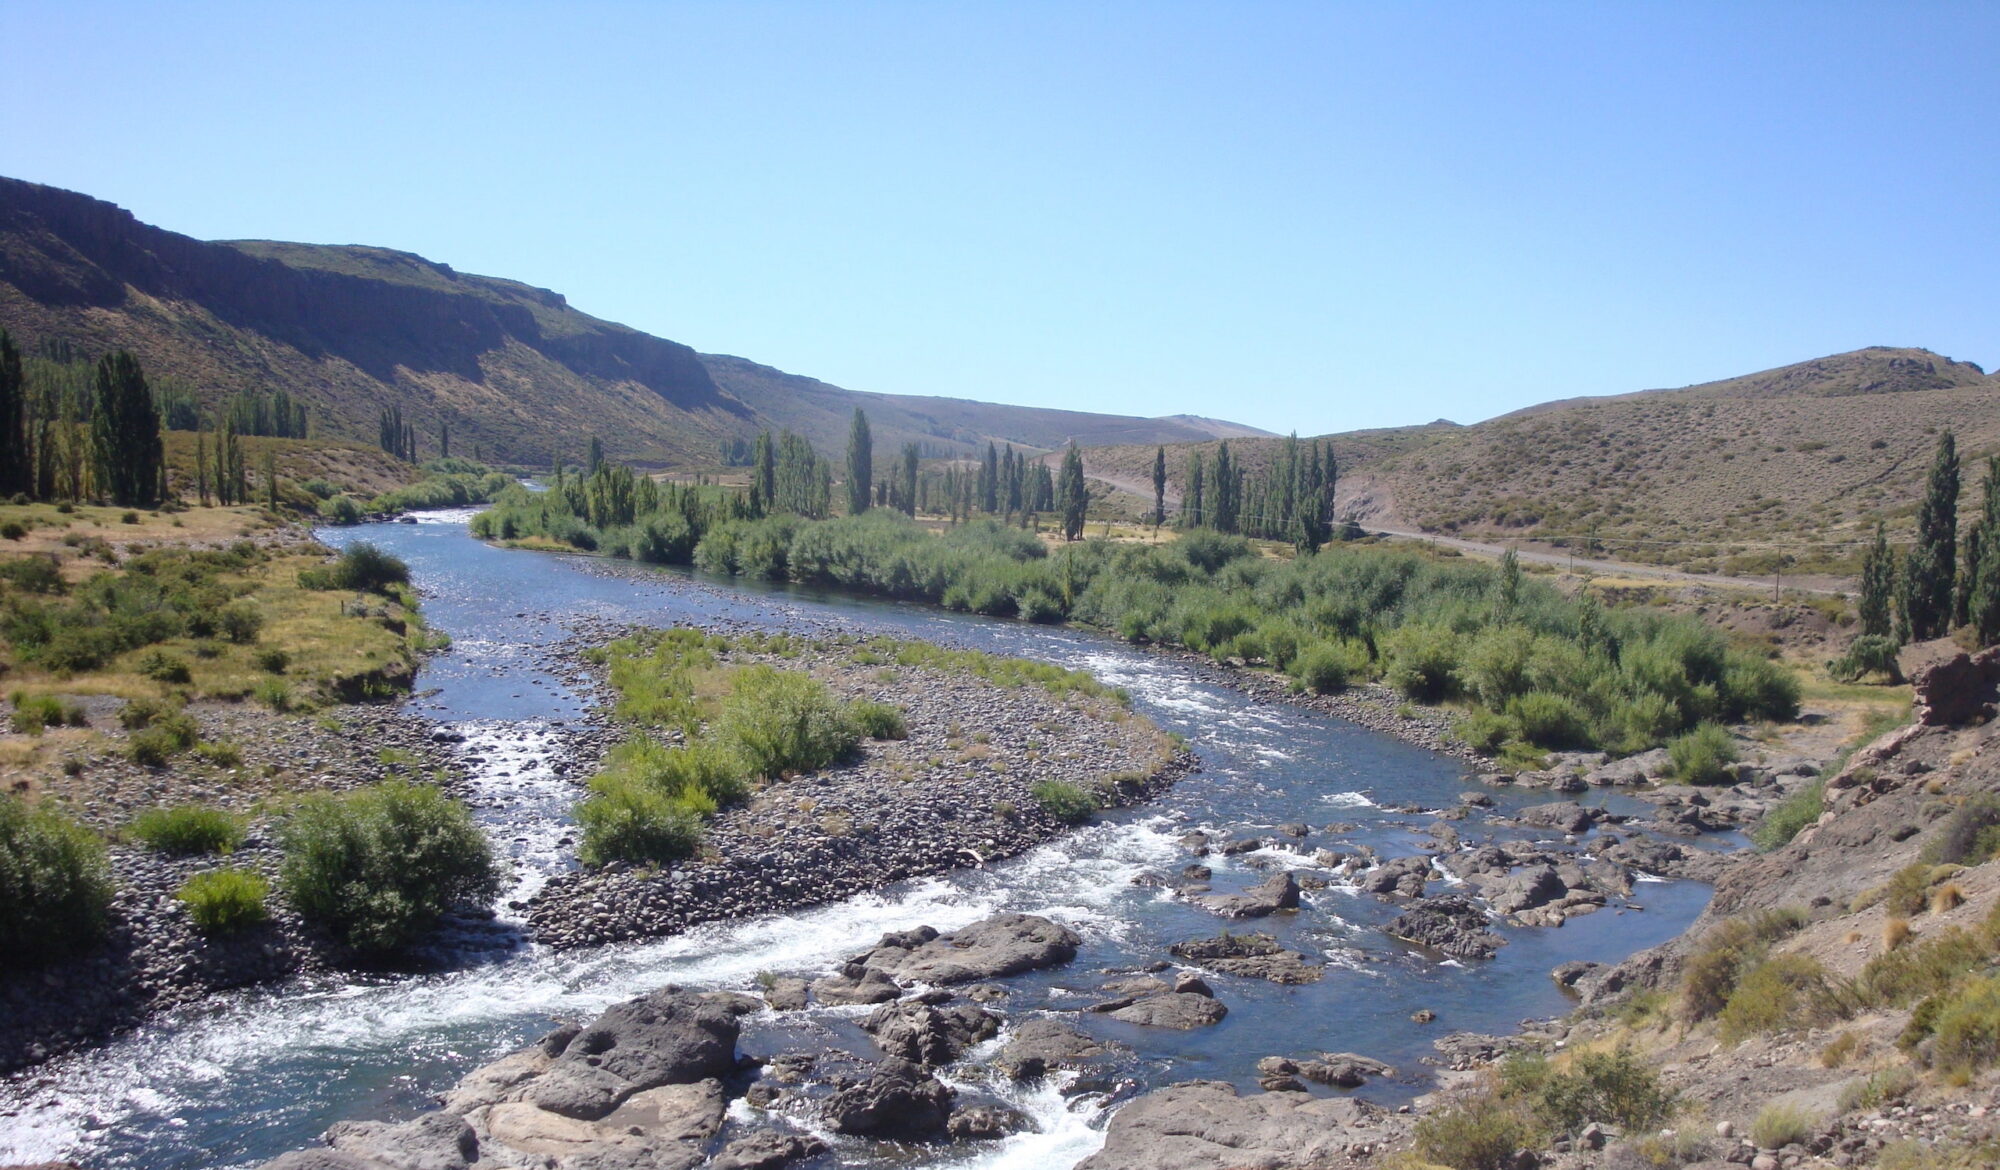 <p>Río Nahueve en la provincia de Neuquén, Argentina. Grupos locales expresan su preocupación por los posibles impactos ambientales de una nueva represa (Imagen: <a href="https://www.flickr.com/photos/irenaimages/23517397858/in/photolist-Cai5T6-BQ9P3S-ry5cC2-suTh3i-sxi2AC-sPSvVn-sdhGLW-sPSr42-sxpnpH-BAMkvD">ADI-NQN</a> / <a href="https://www.flickr.com/people/irenaimages/">IRENA</a>, <a href="https://creativecommons.org/licenses/by-nc-nd/2.0/">CC BY NC ND</a>)</p>